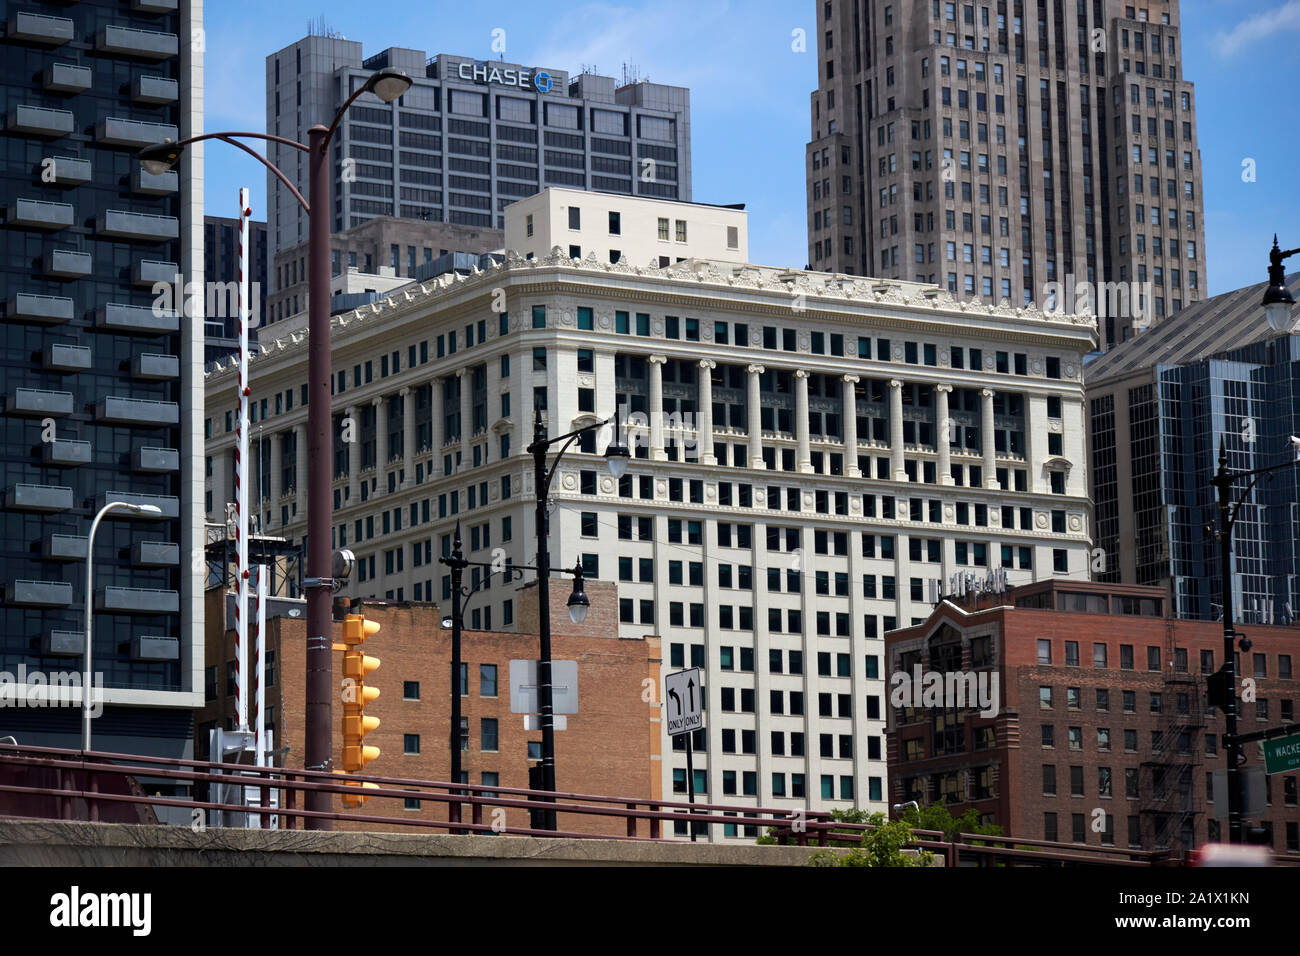 Gli edifici e i tetti nel quartiere finanziario del loop quartiere centro di chicago, illinois, Stati Uniti d'America con scambio di assicurazione Foto Stock